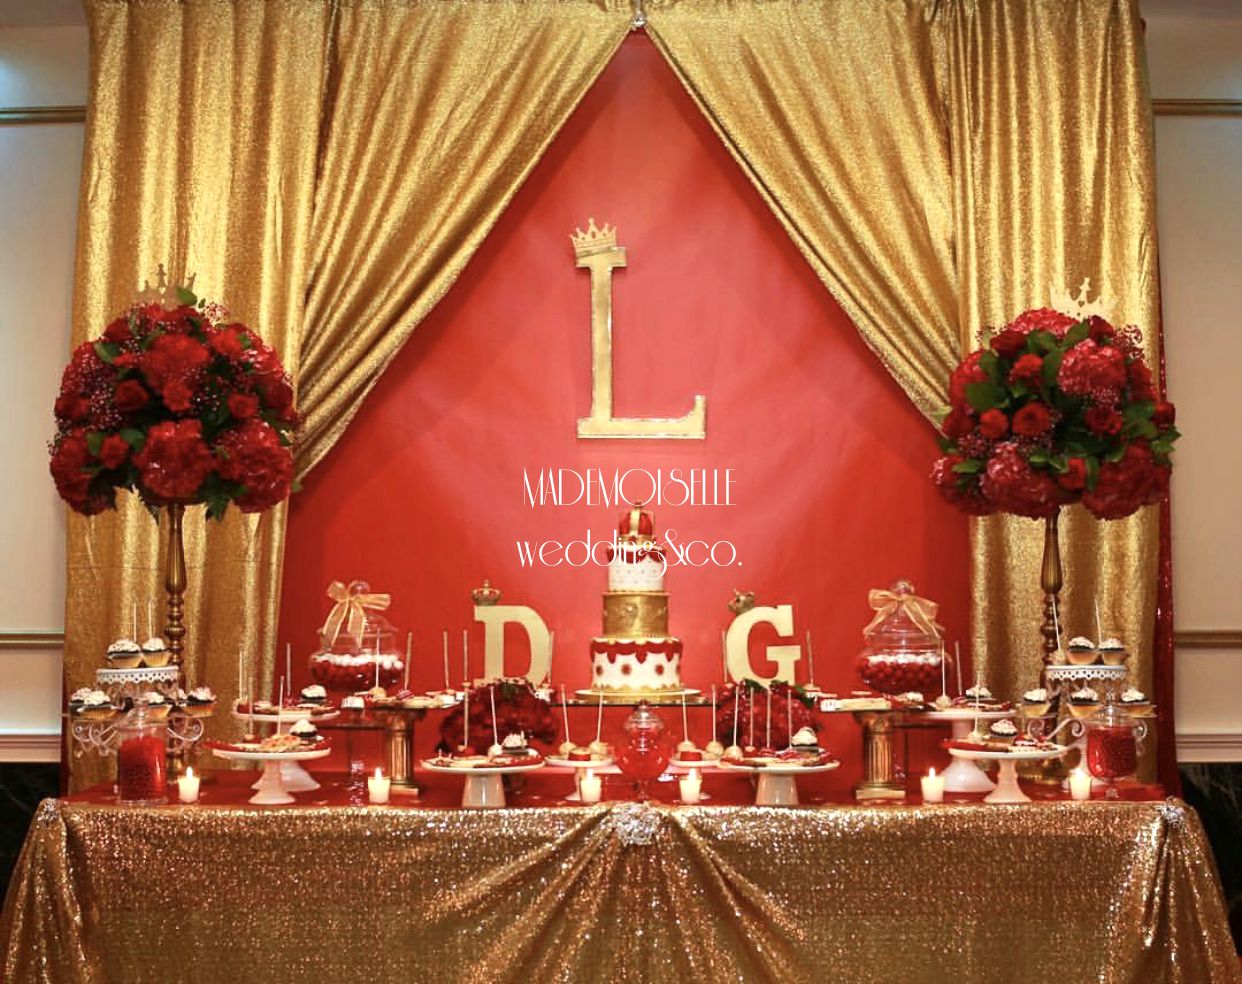 IMG_E4539-slatki sto-dekoracija rodjendana-dekoracija za svadbe-kolacici-crveno zlatna dekoracija slatkog stola